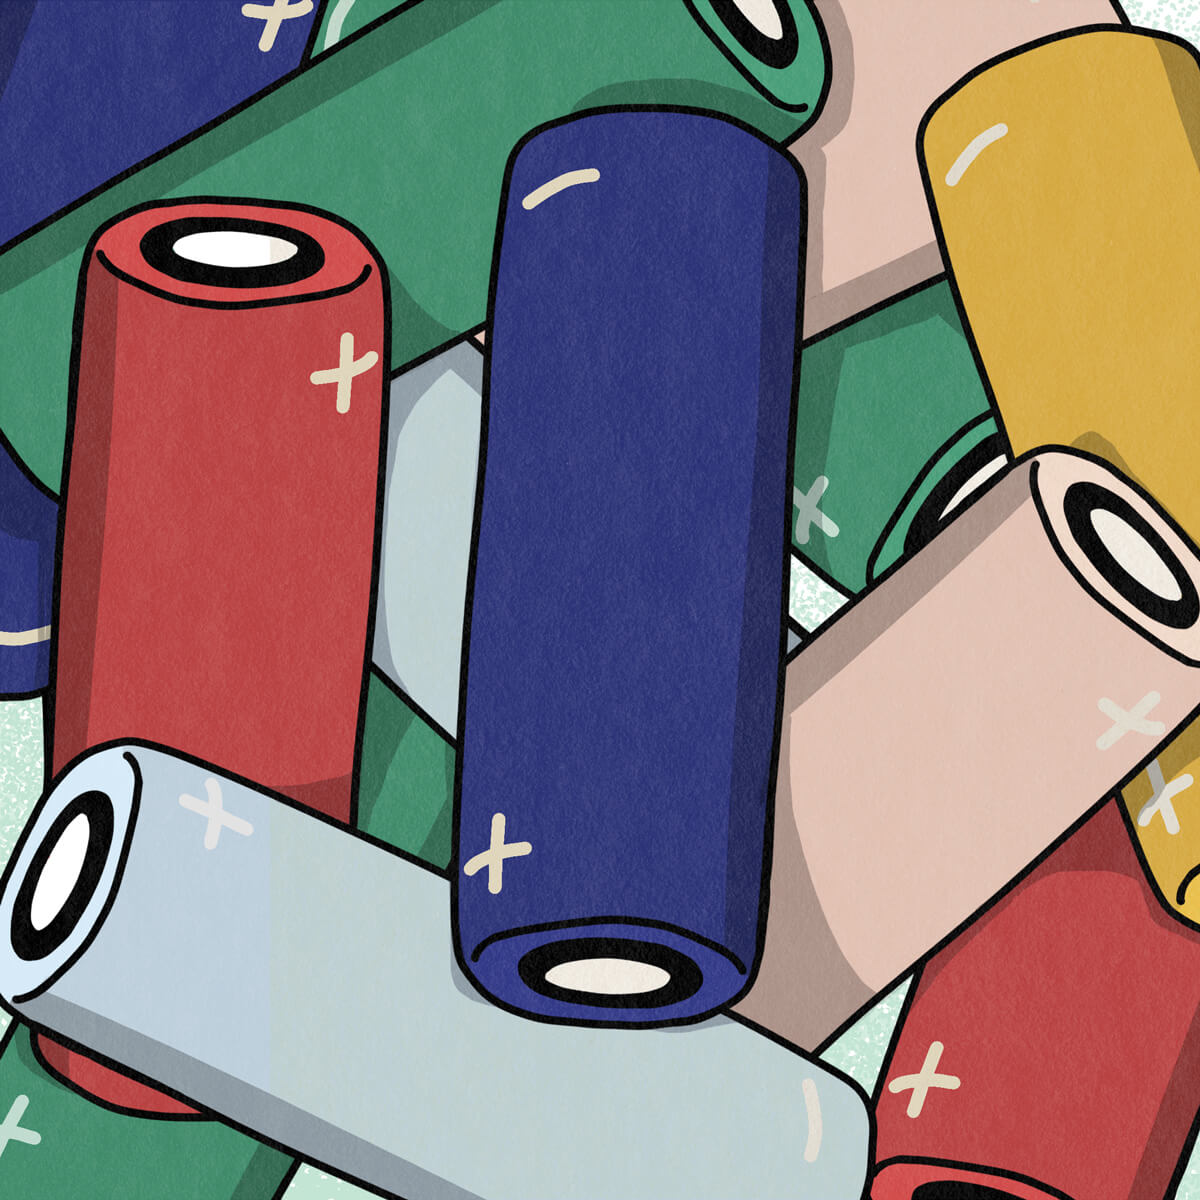 Batterie, comment choisir votre d’accumulateur ? | Pulp